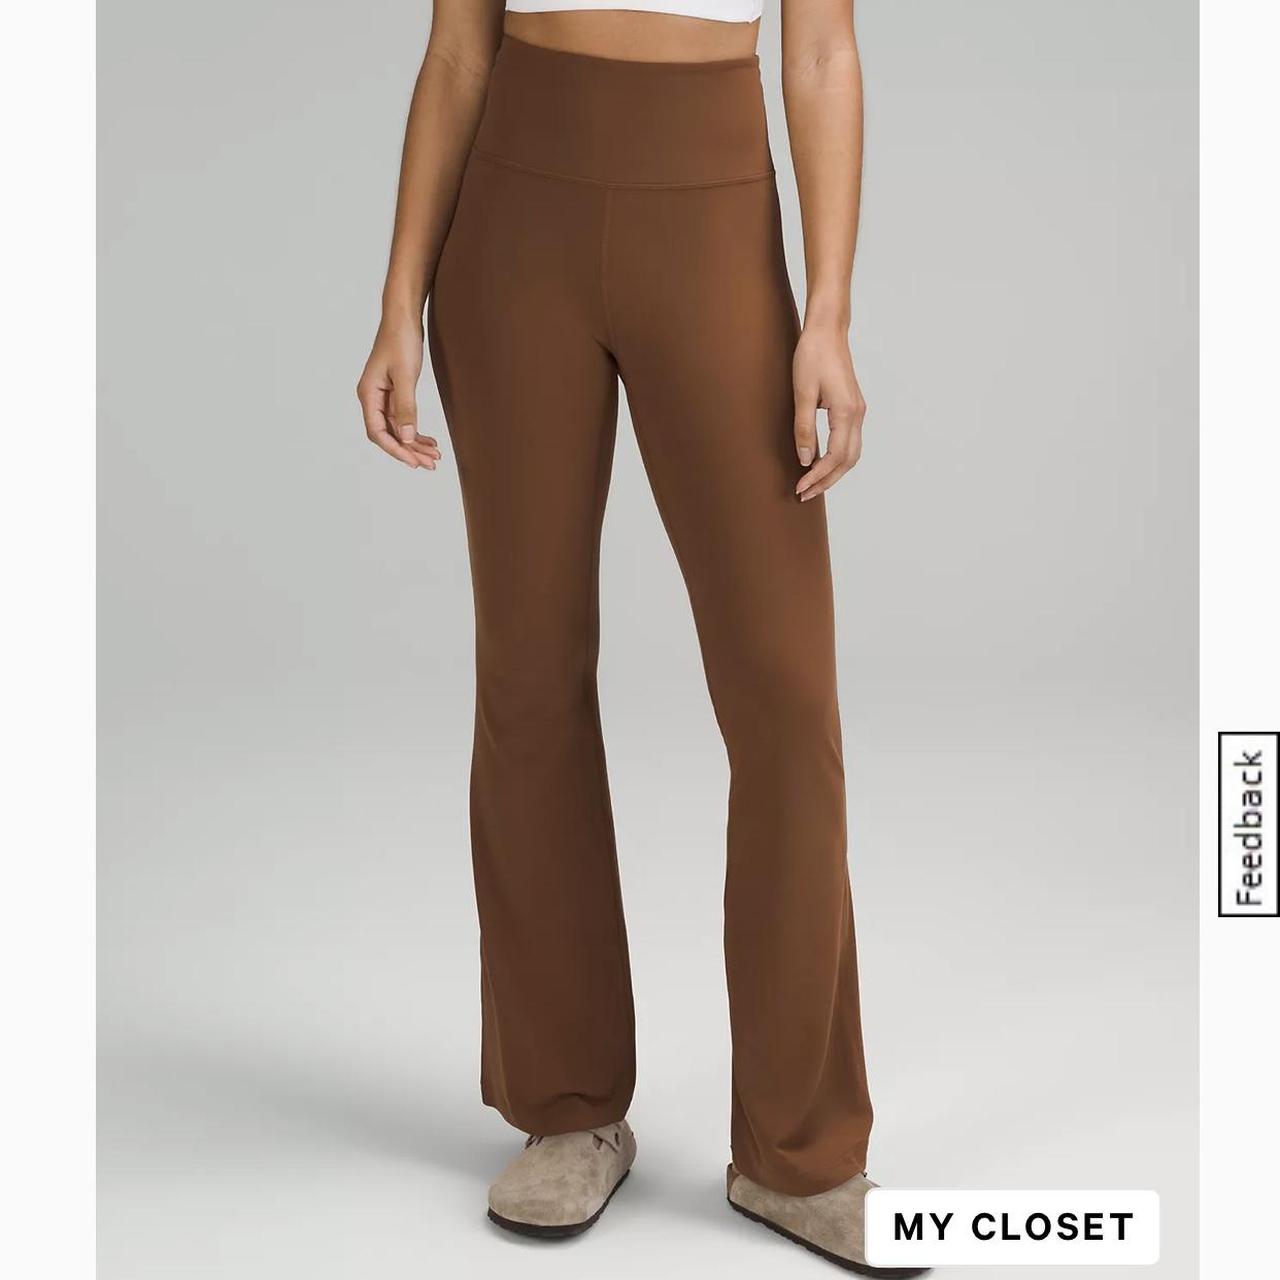 Beautiful brown Lululemon leggings these are so - Depop